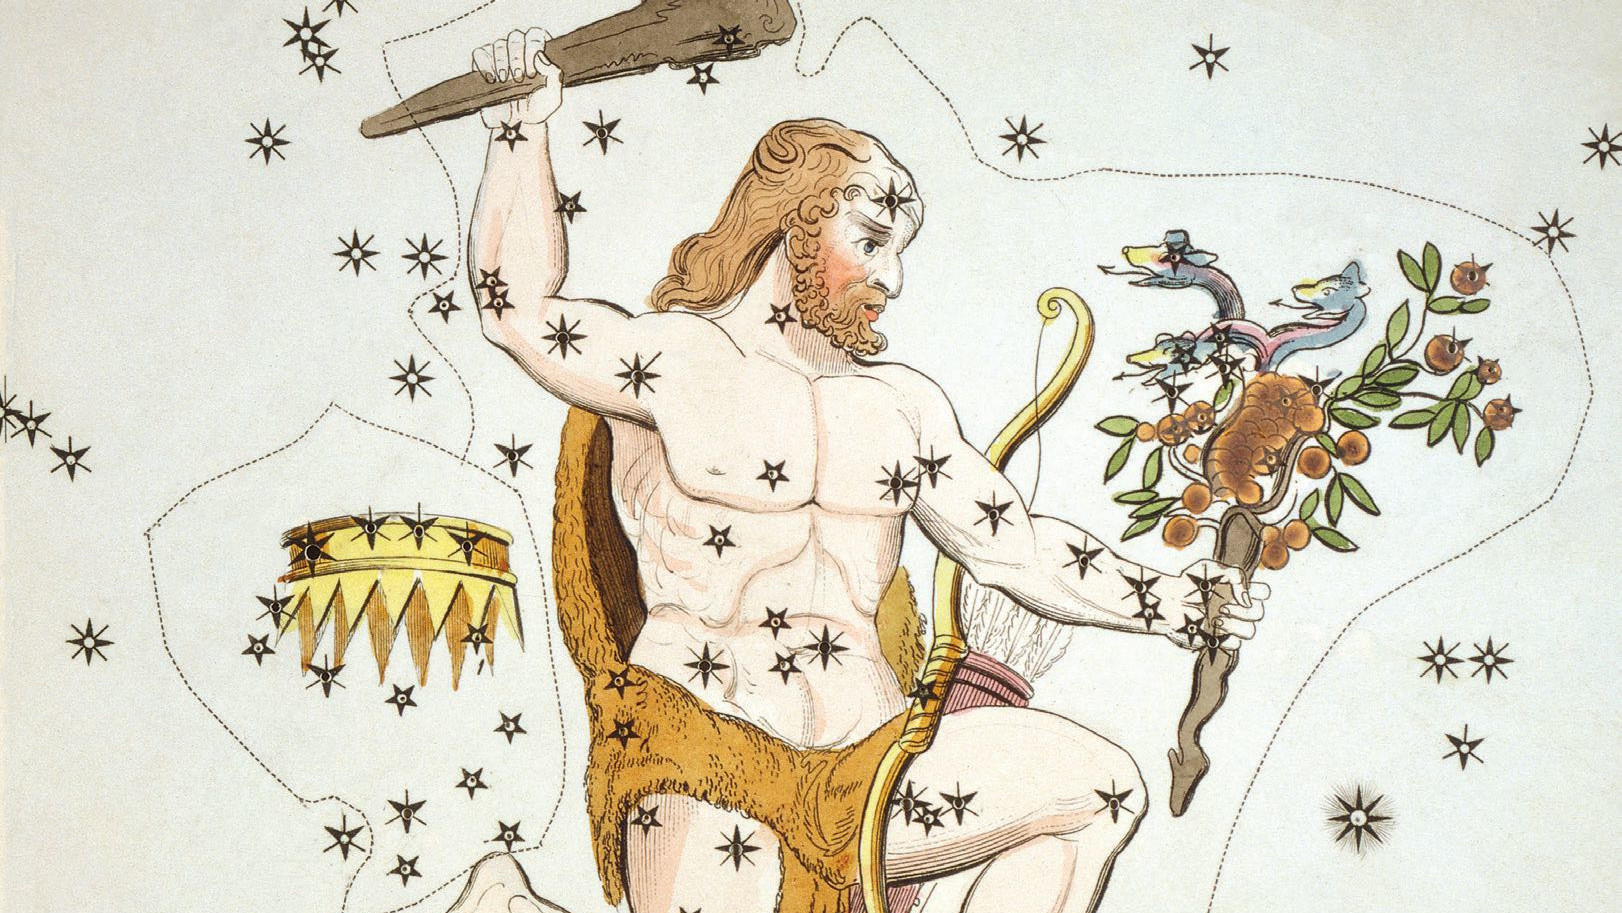 Reprezentările istorice îl arată pe Hercule complet, cu ghioaga în mână, cu blana leului și merele de aur furate. 